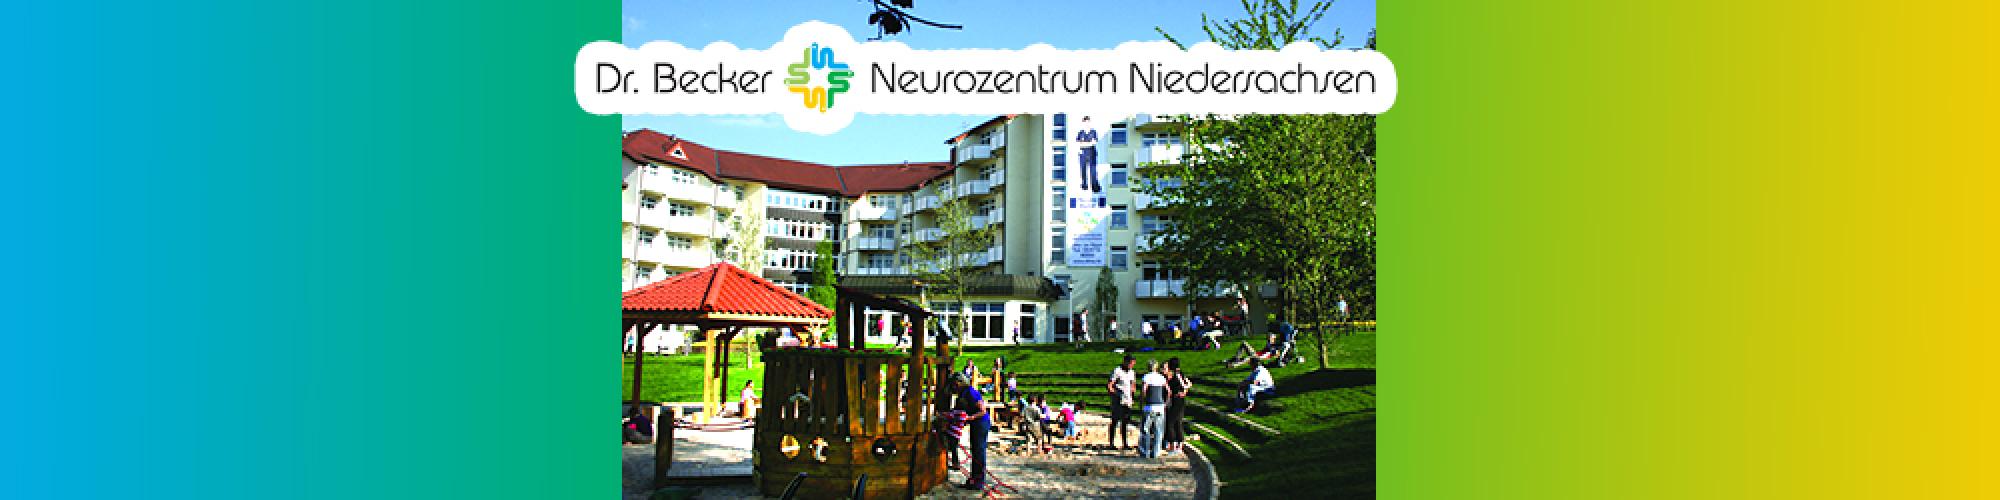 Dr. Becker Neurozentrum Niedersachsen